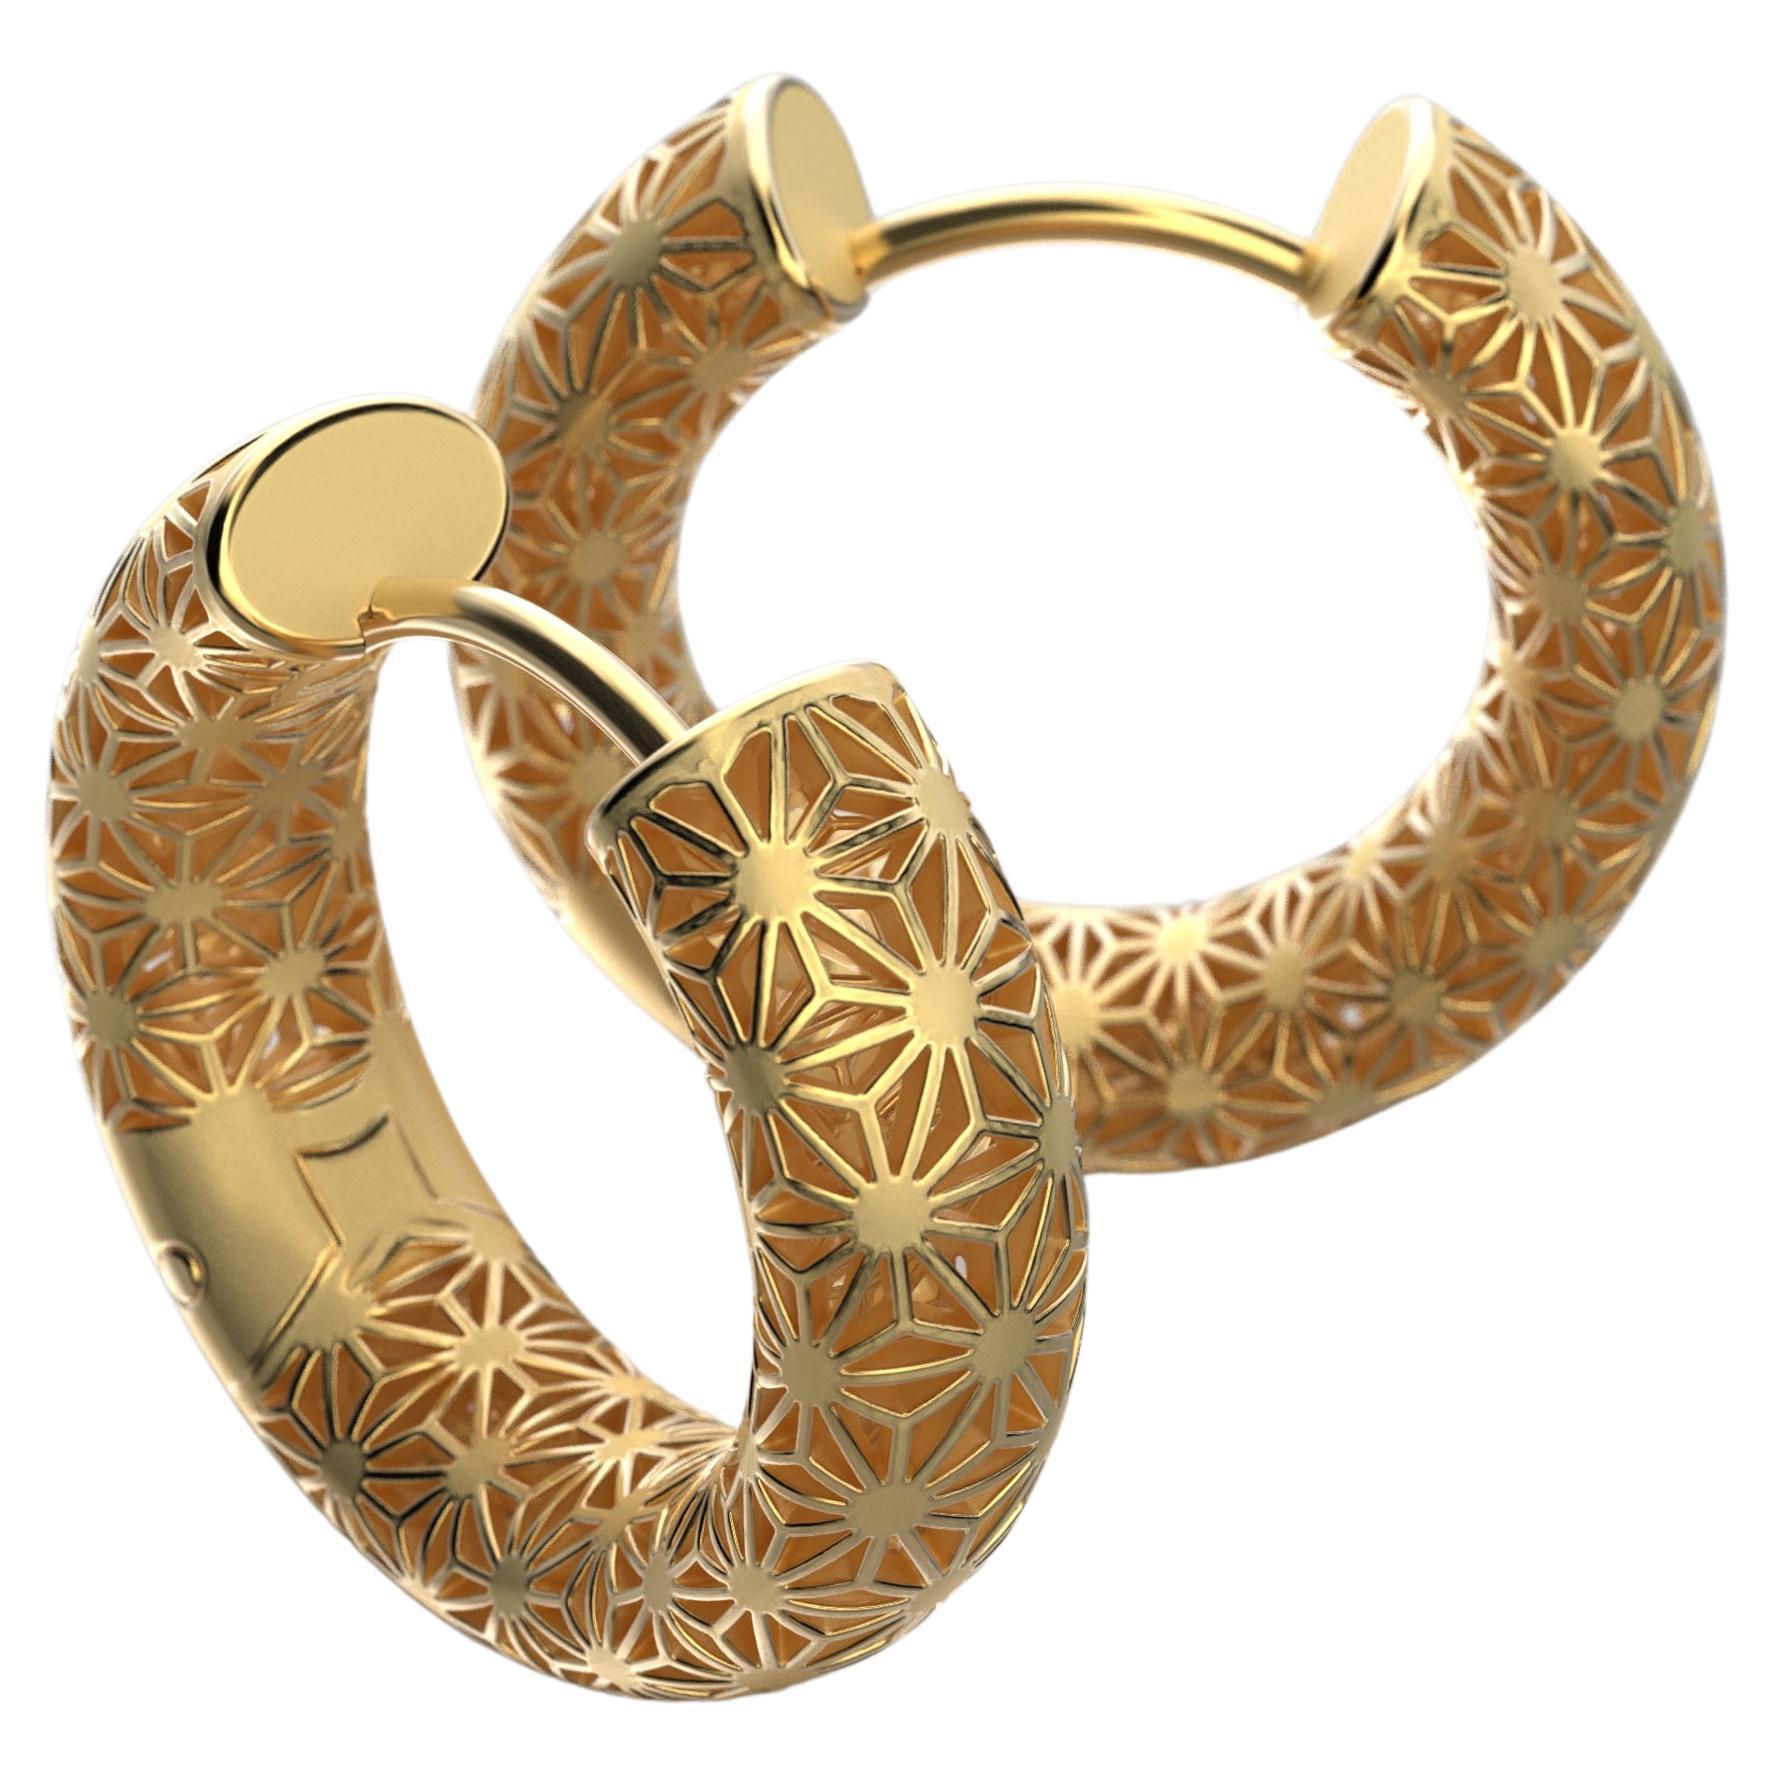  Oltremare Gioielli 18K Italian Gold Hoop Earrings - Sashiko Japanese Pattern  For Sale 2